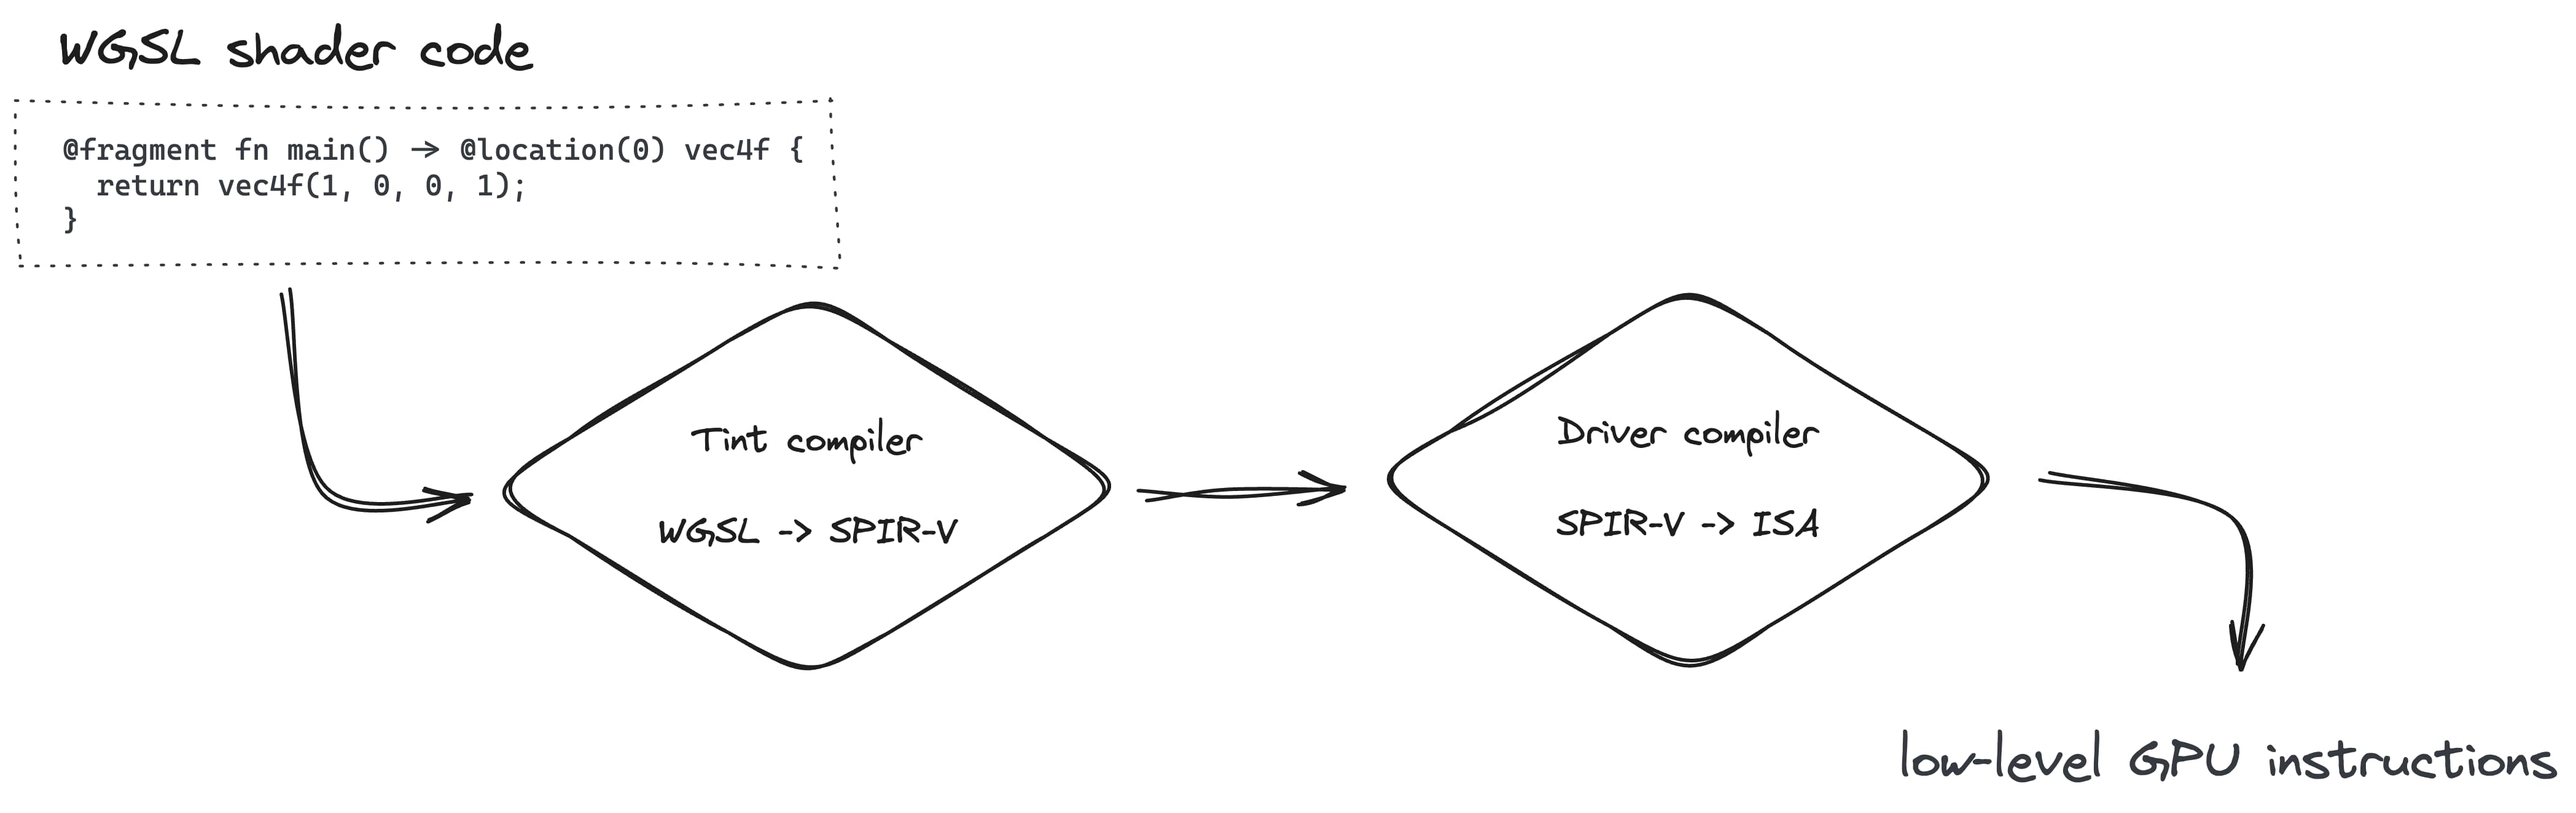 रेंडर करने वाली पाइपलाइन बनाने में, टिंट कंपाइलर के साथ WGSL को SPIR-V में बदलना और फिर ड्राइवर कंपाइलर के साथ ISA में बदलना शामिल है.